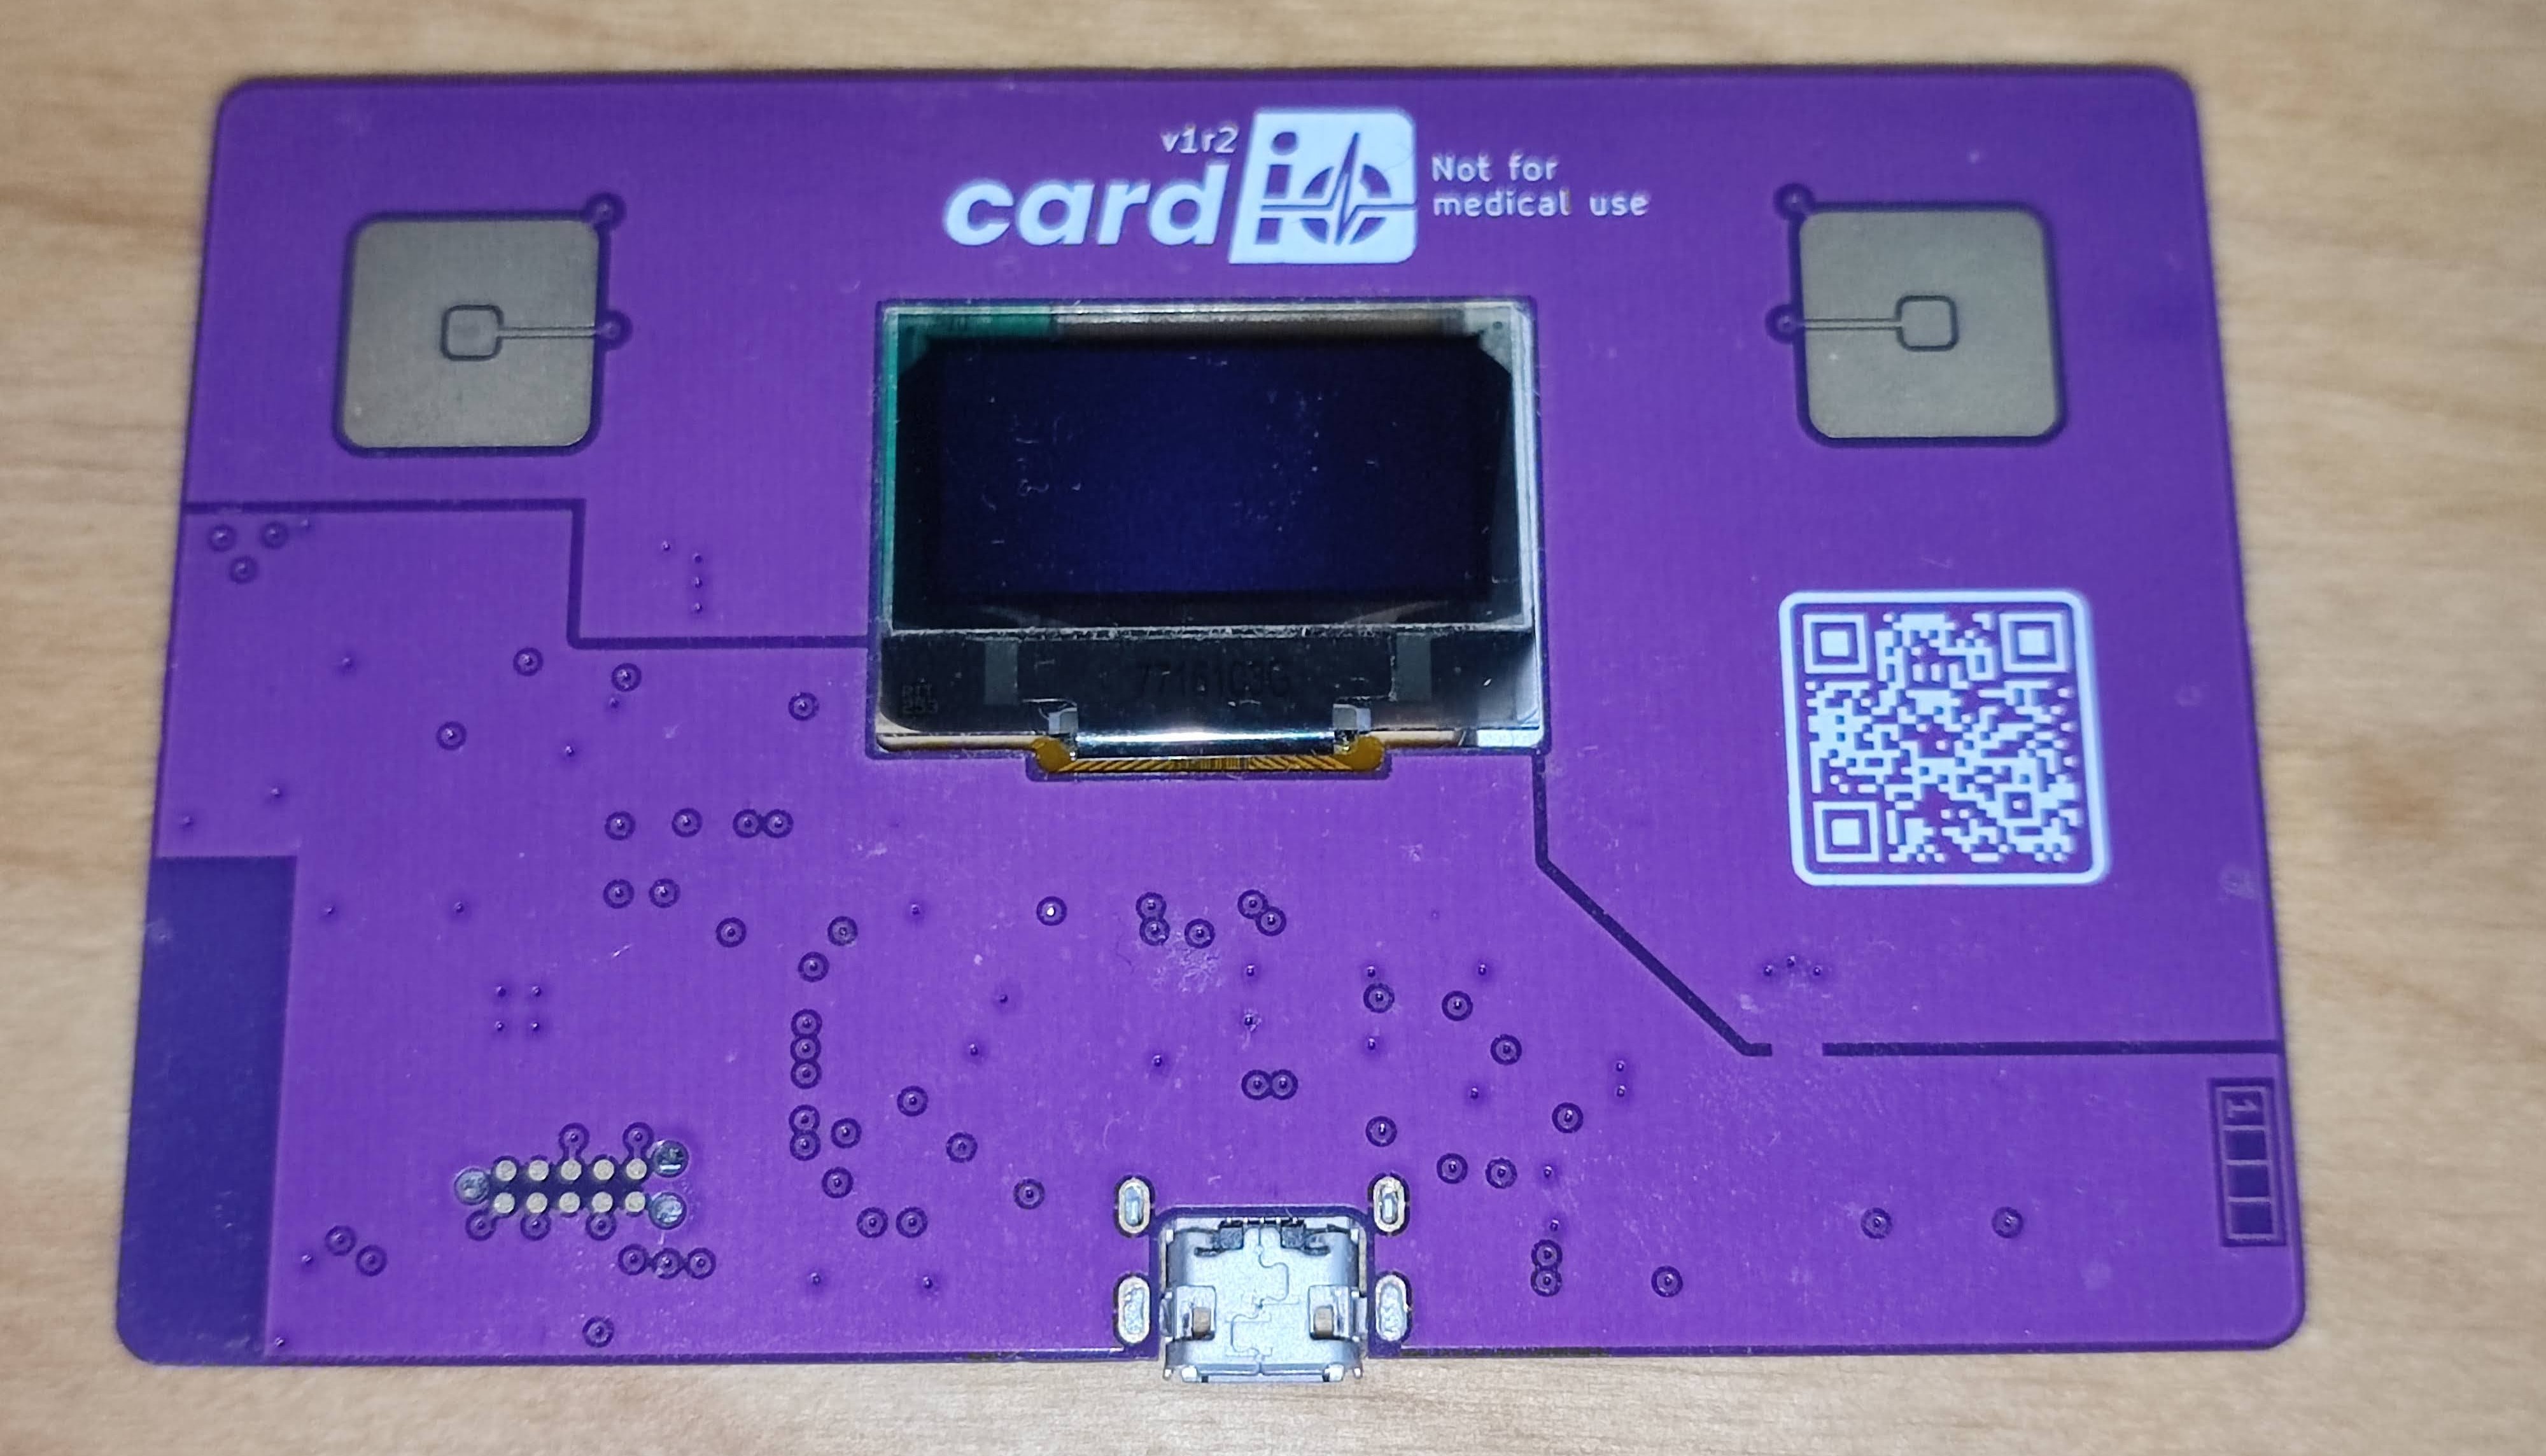 Card/IO ist ein Open-Source-EKG-Monitor im Kreditkartenformat